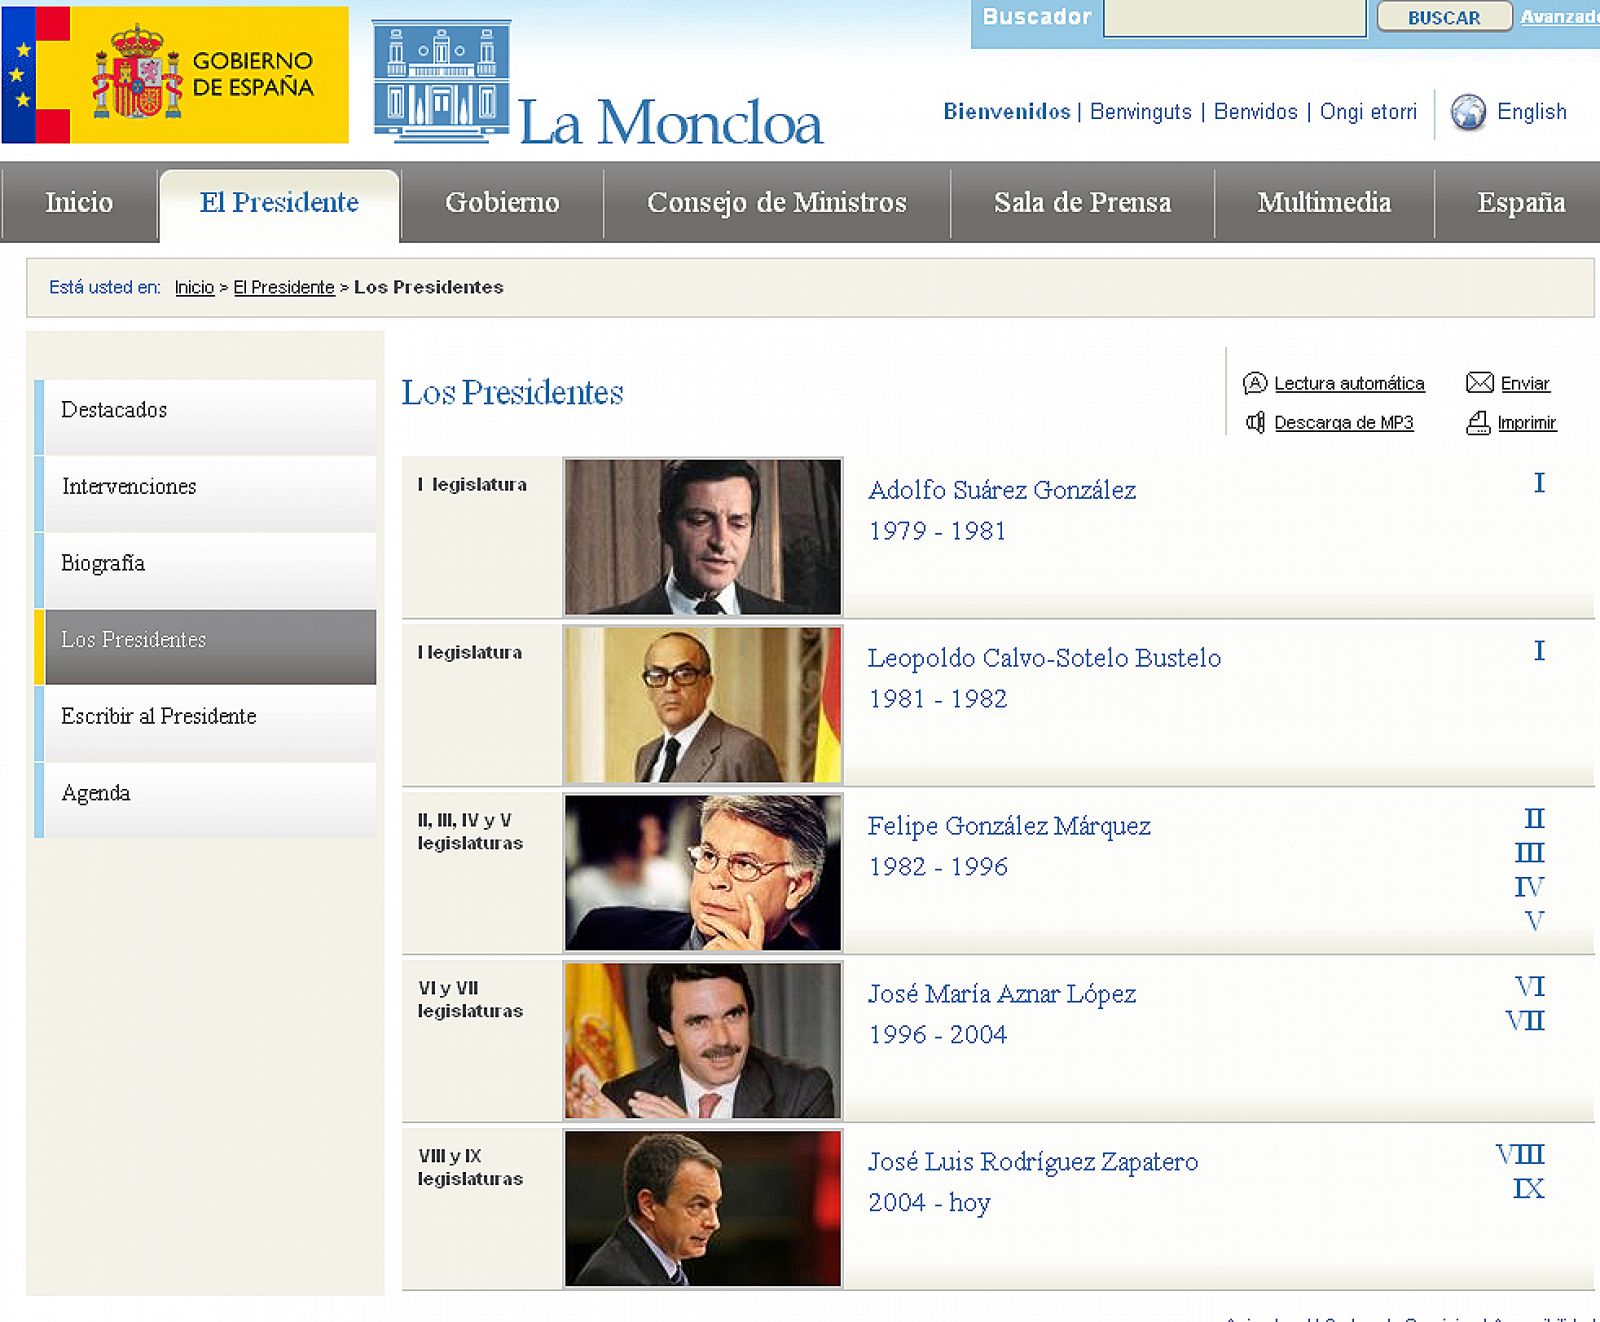 Imagen actual de la relación de presidentes que recoge la web de La Moncloa.